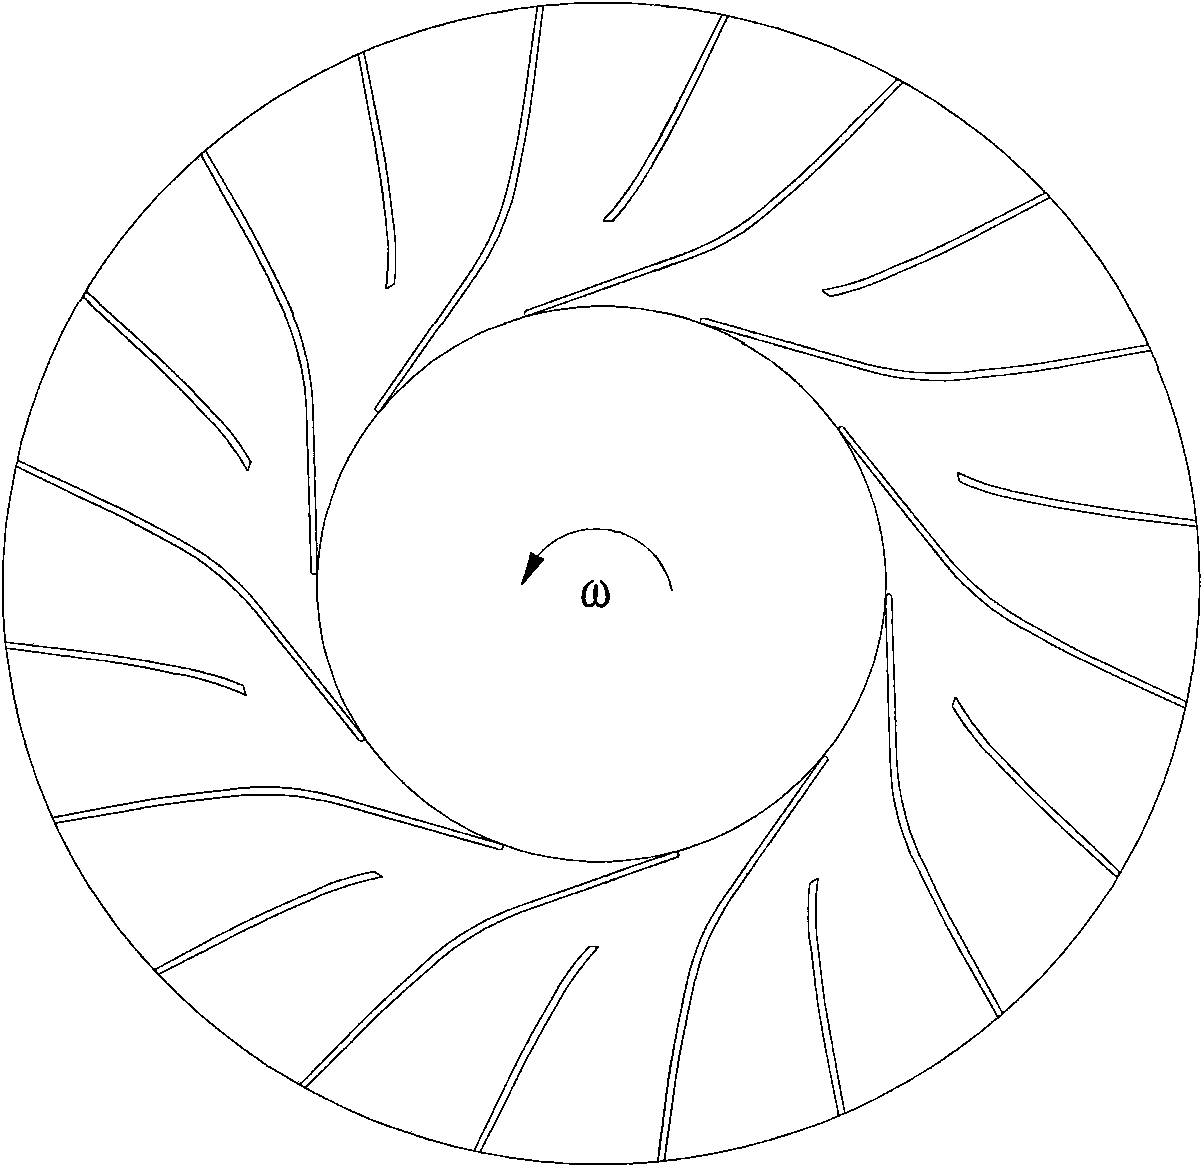 Secondary splitter blade type centrifugal impeller